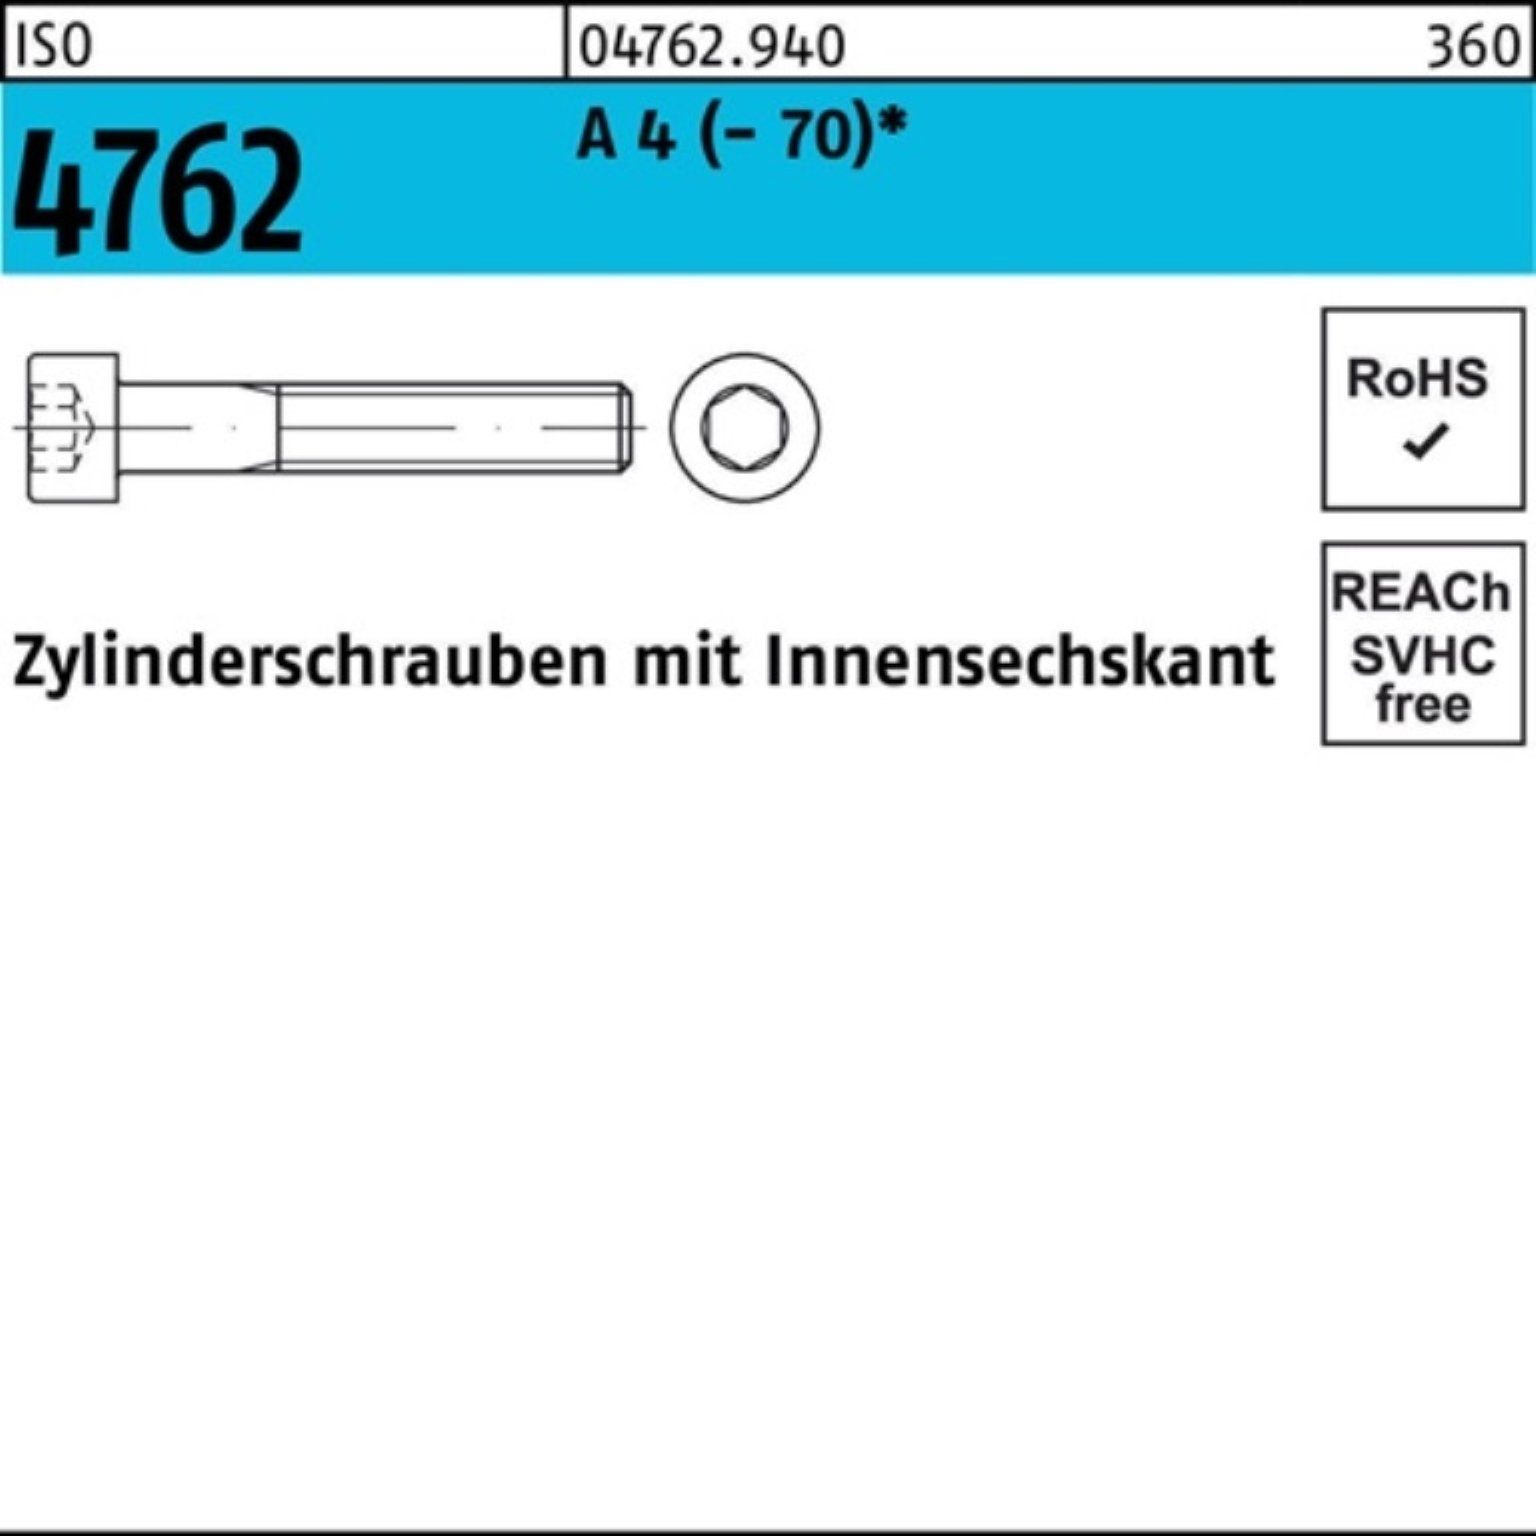 200er Innen-6kt 200 4 (70) ISO Zylinderschraube 4762 Zylinderschraube S Pack Reyher 18 M8x A